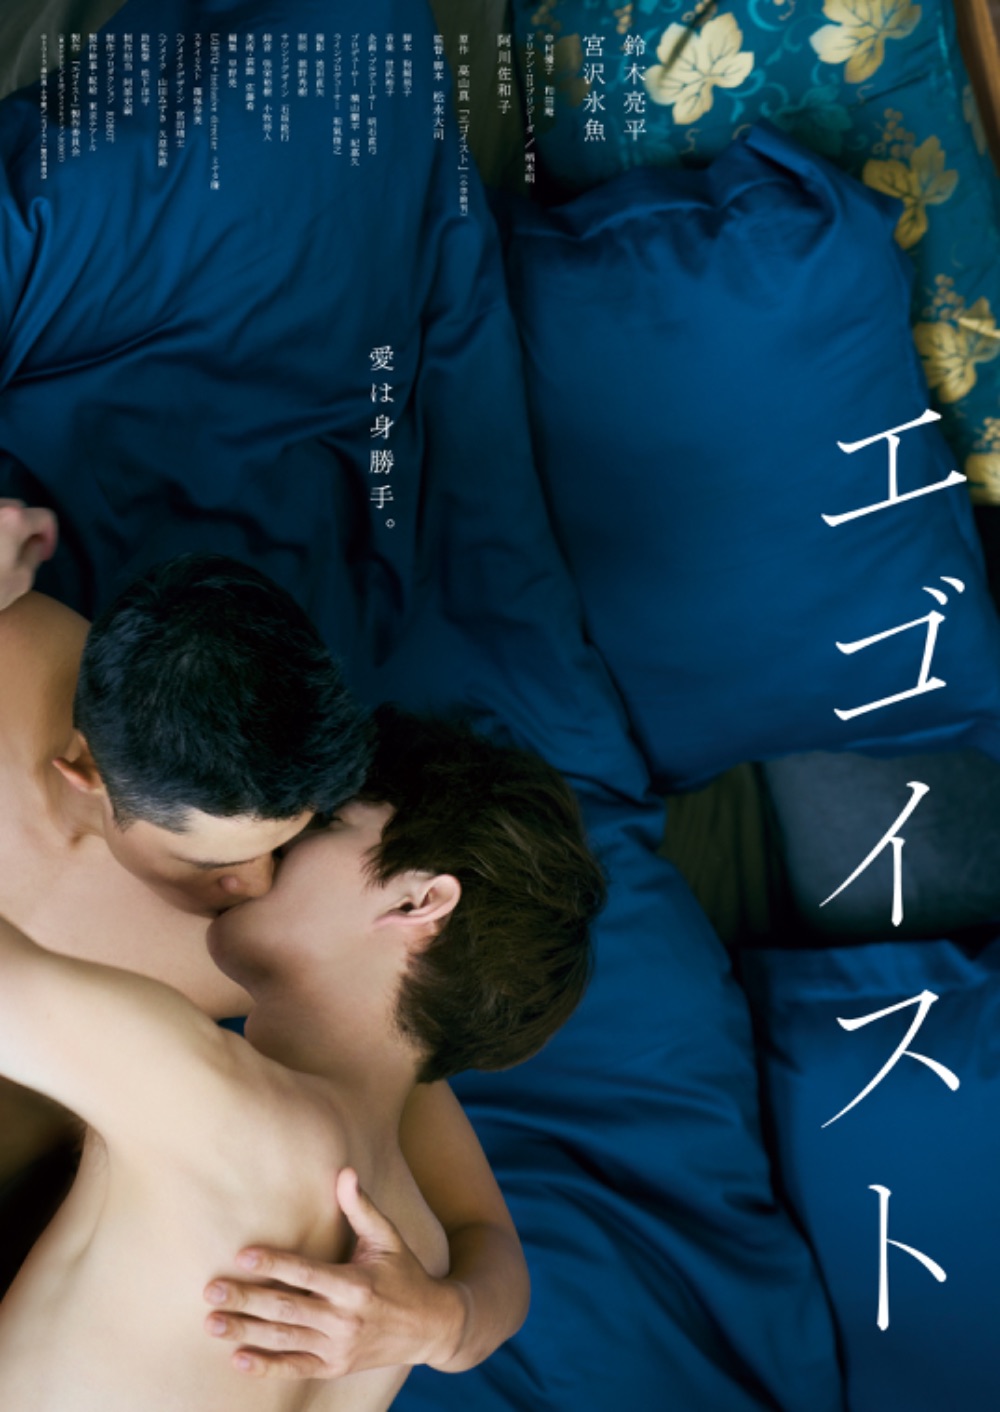 鈴木亮平さん演じる浩輔の友人役として、少しだけ出演しております。こうして同性愛を題材にした作品に当事者として出演させていただけて光栄です。  そして、この映画はそれを前提にした、人生のお話。  #アジアフィルムアワード にも3部門ノミネートされている今作、是非とも映画館でお楽しみください。